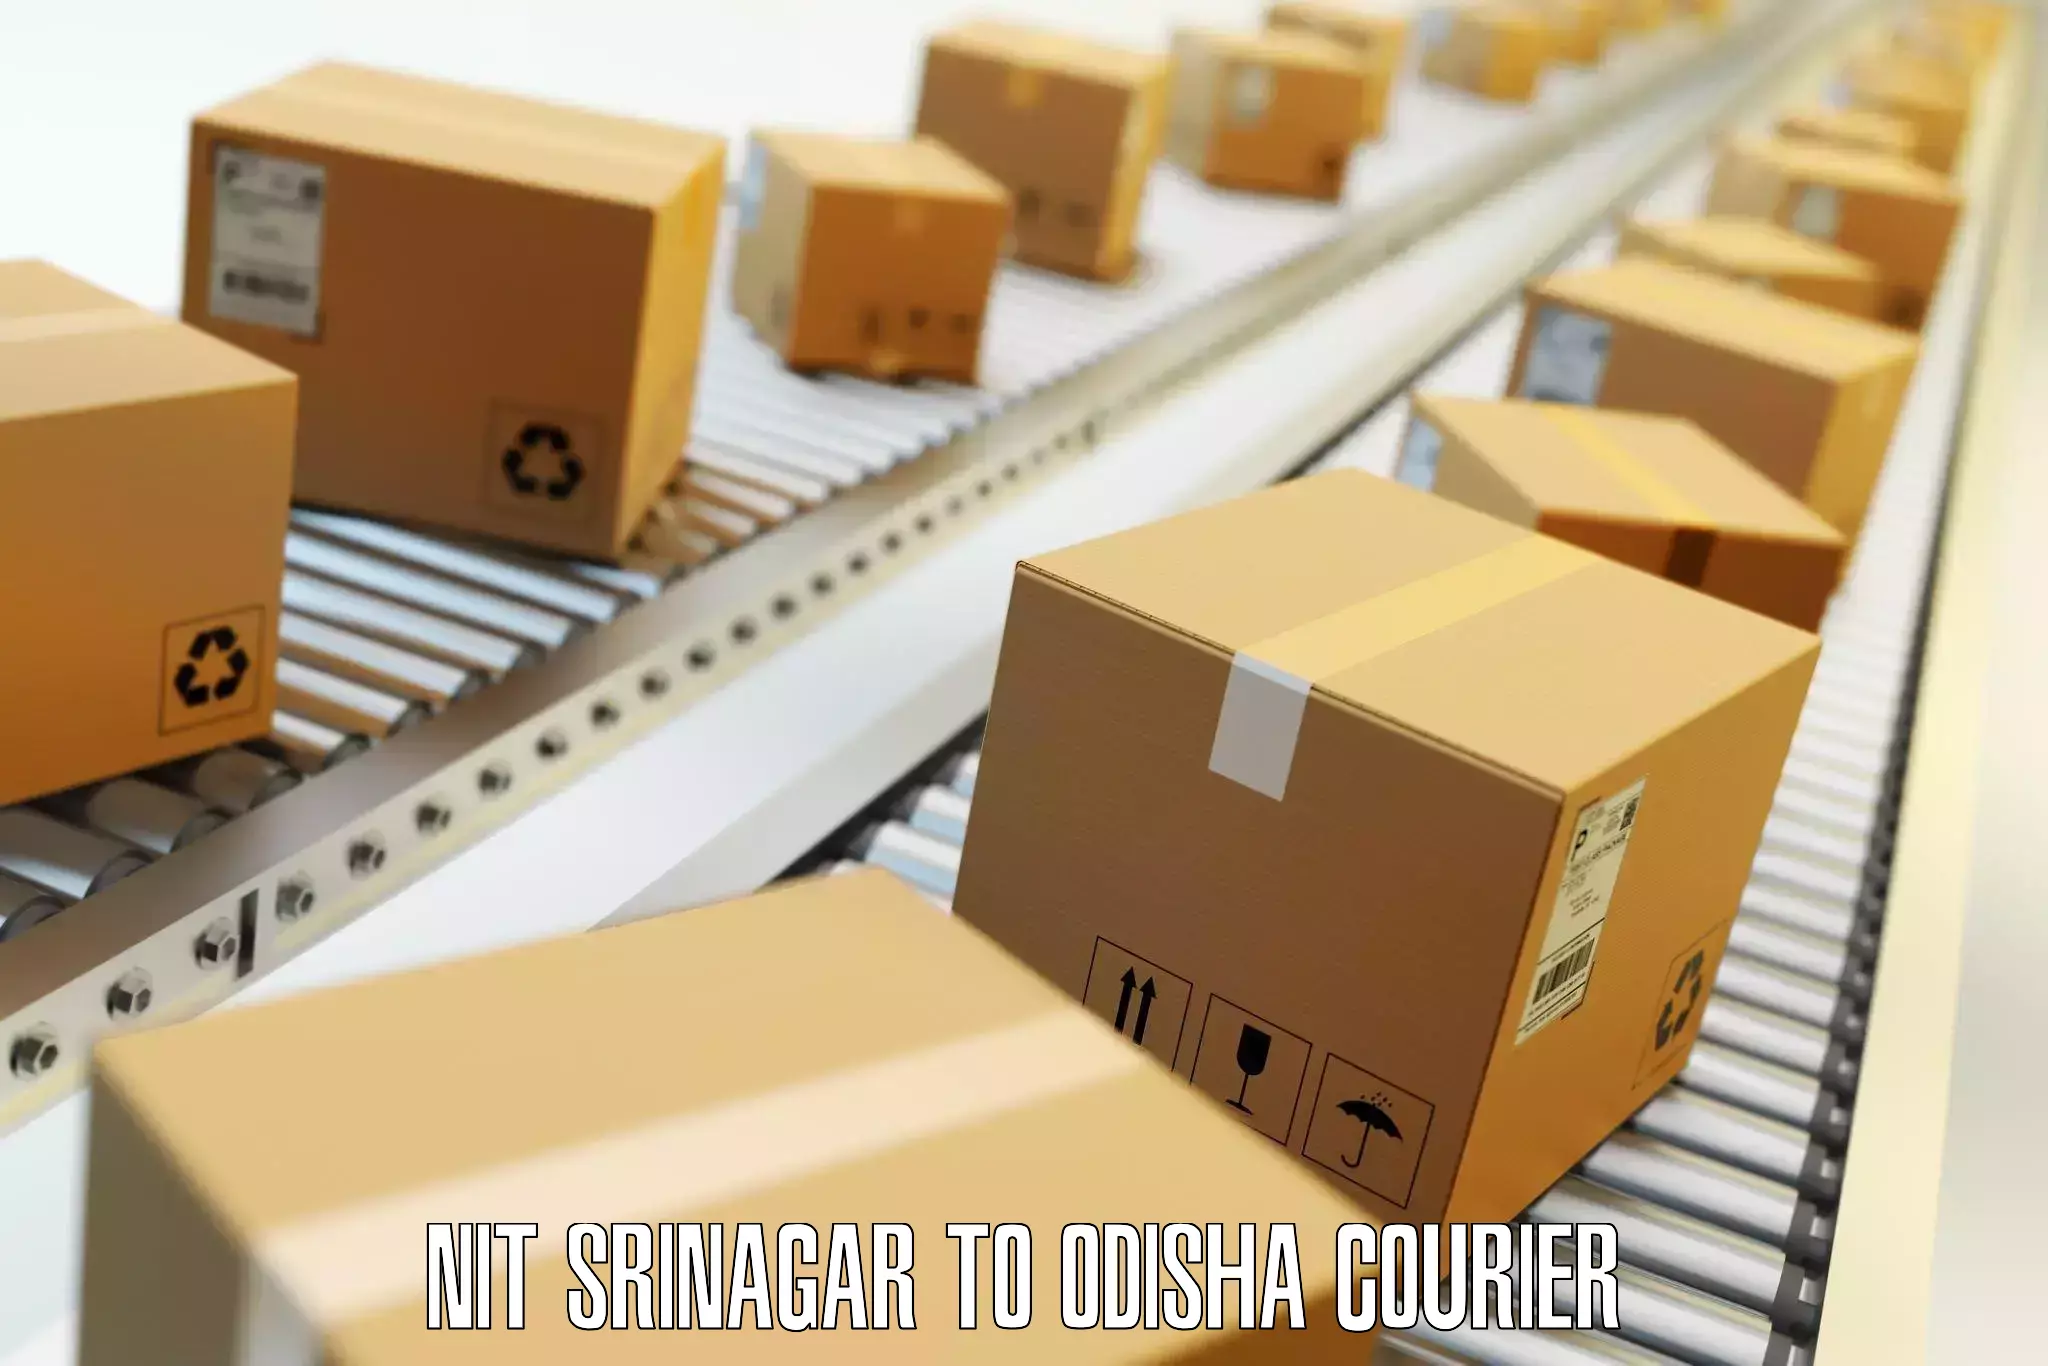 Baggage shipping service NIT Srinagar to Balikuda